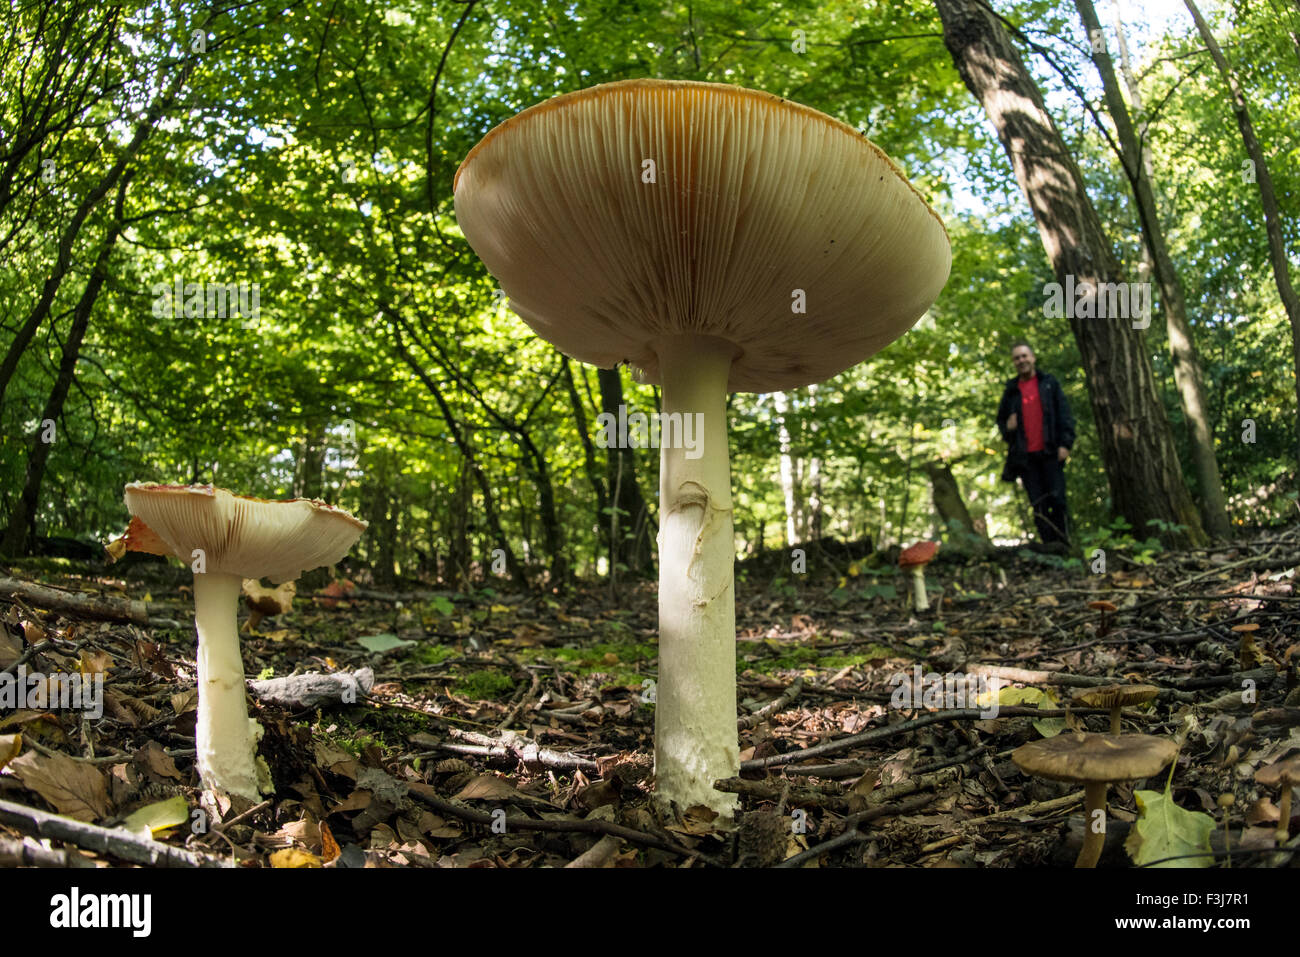 Imbuto comune (Clitocybe gibba) funghi close up con uomo in background nella Foresta di Epping, Inghilterra, Gran Bretagna, Regno Unito Foto Stock